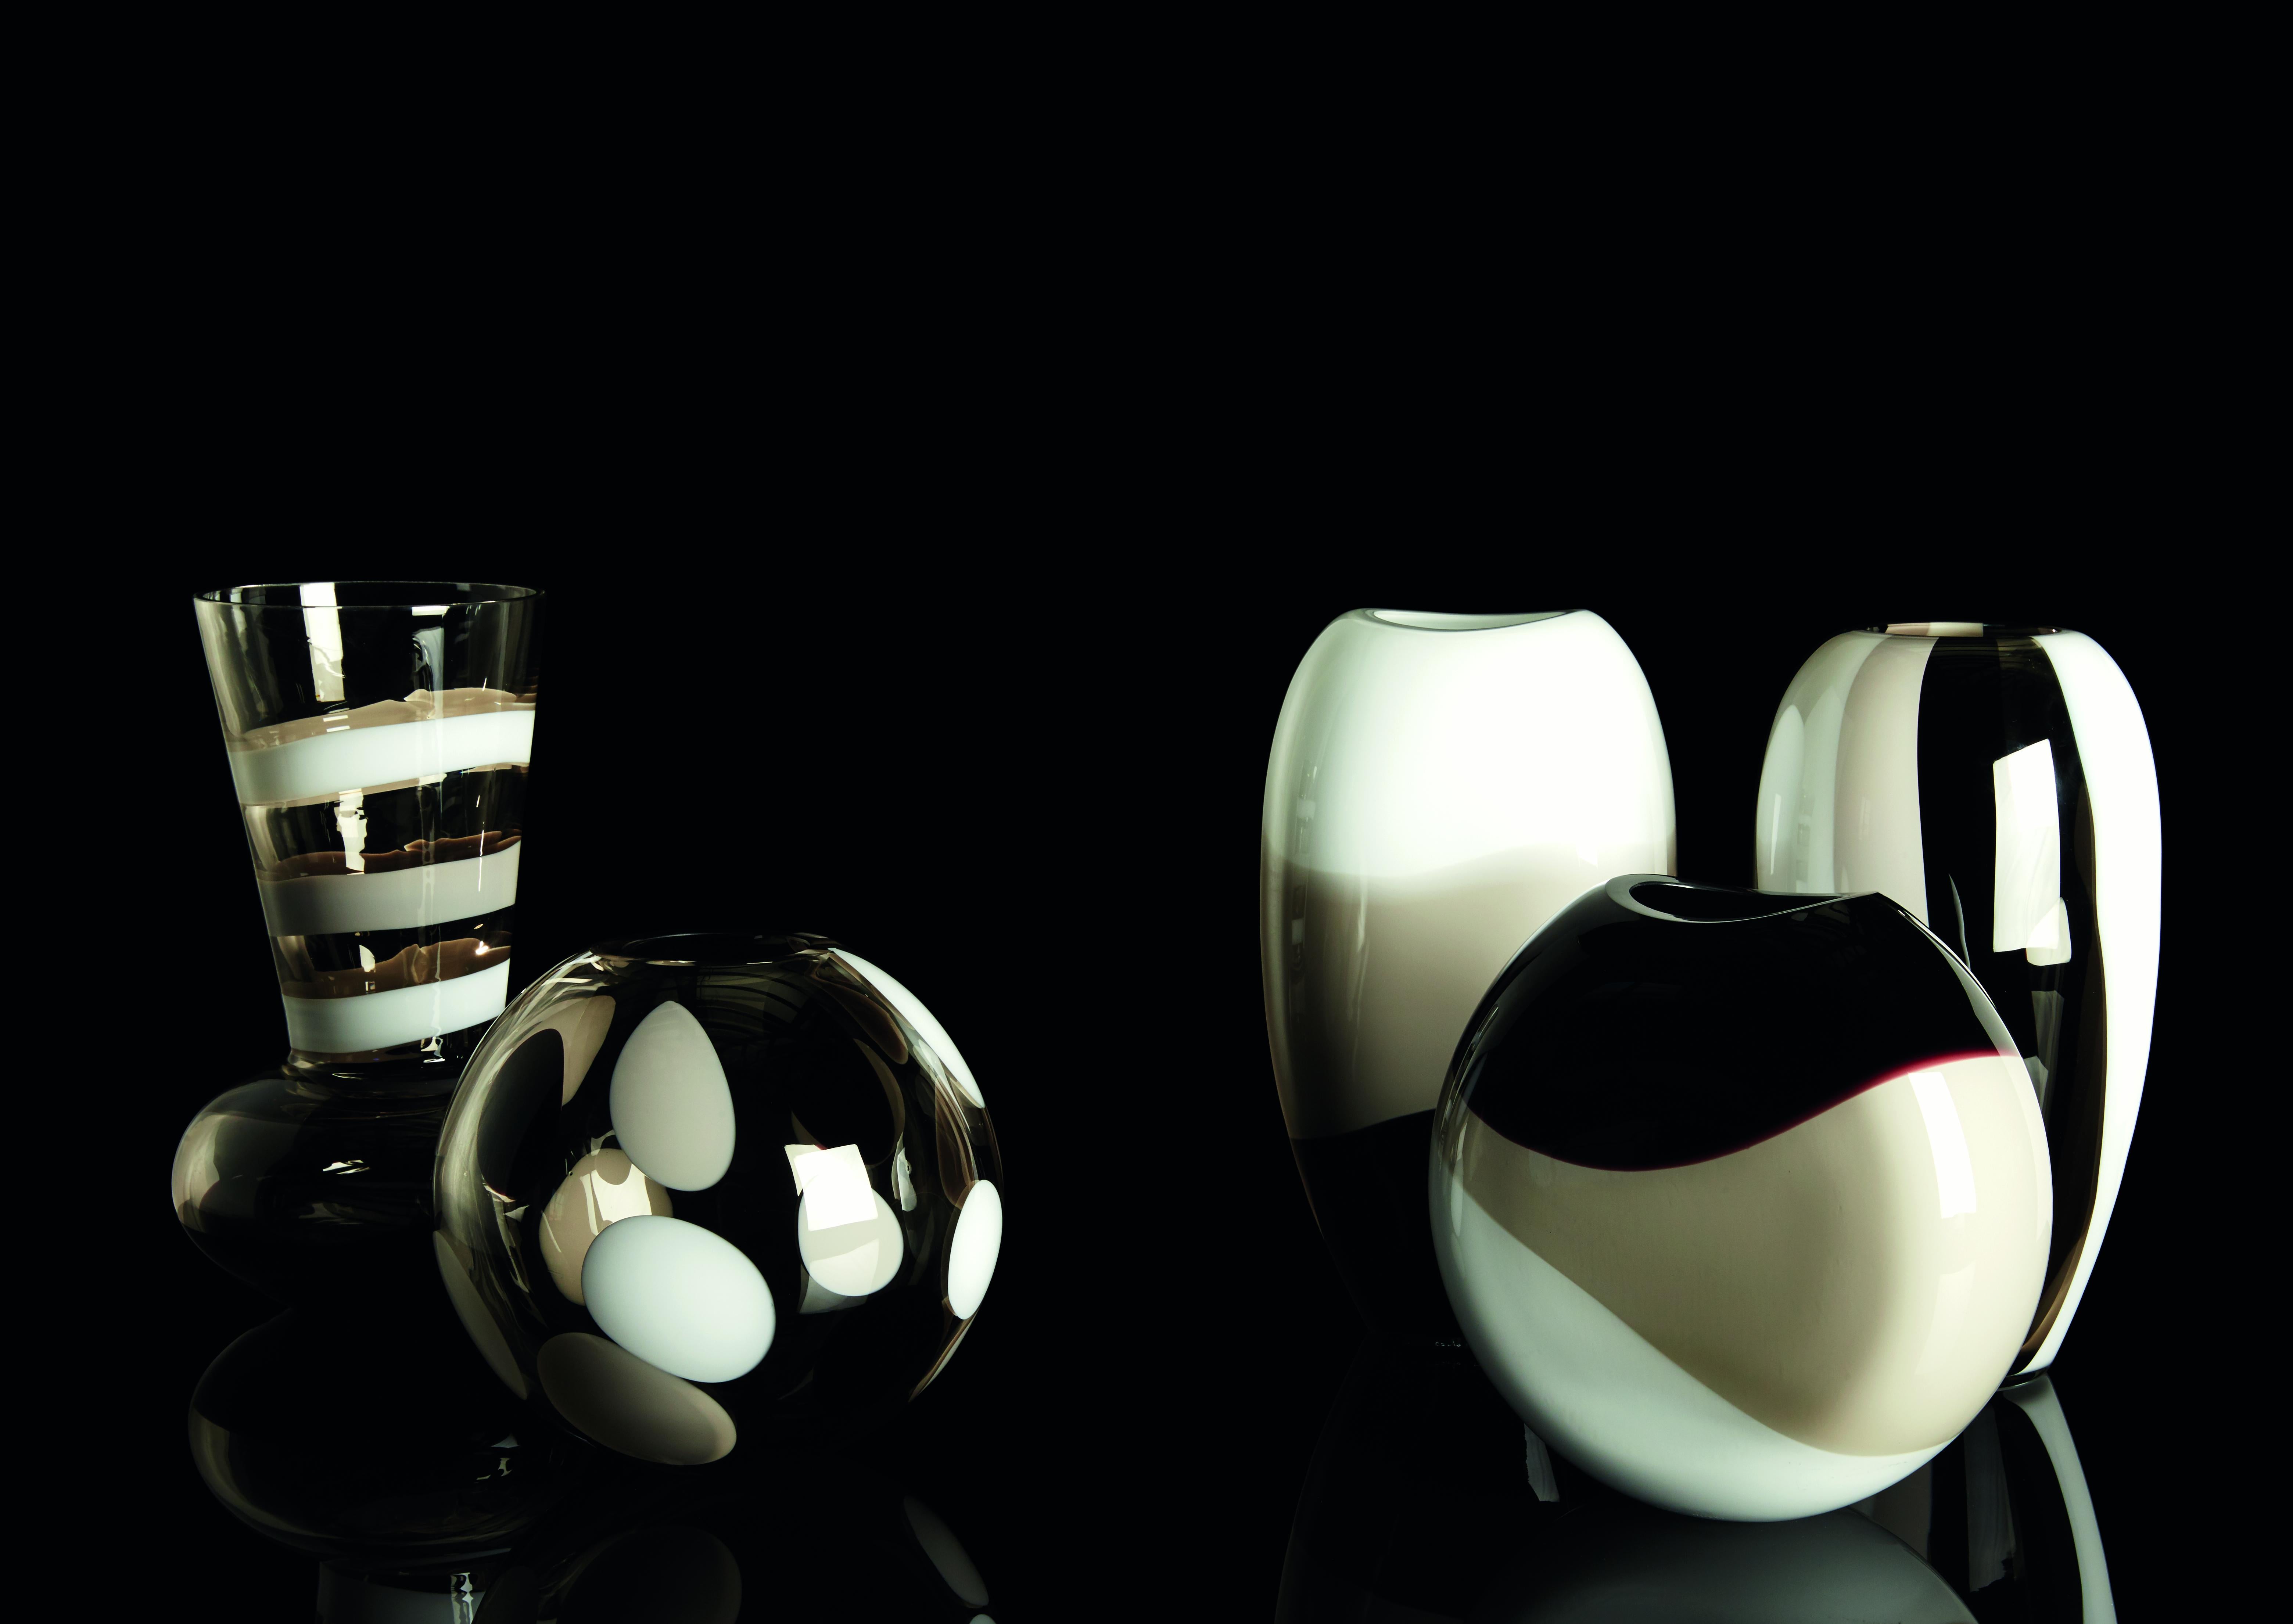 Ellisse wurde als Weiterentwicklung der Vase Ogiva geschaffen und ist ein Objekt, das dank seiner komplexen Bearbeitung im heißen Zustand ein perfektes Gleichgewicht zwischen seinen chromatischen Komponenten erreicht und starke Emotionen hervorruft.